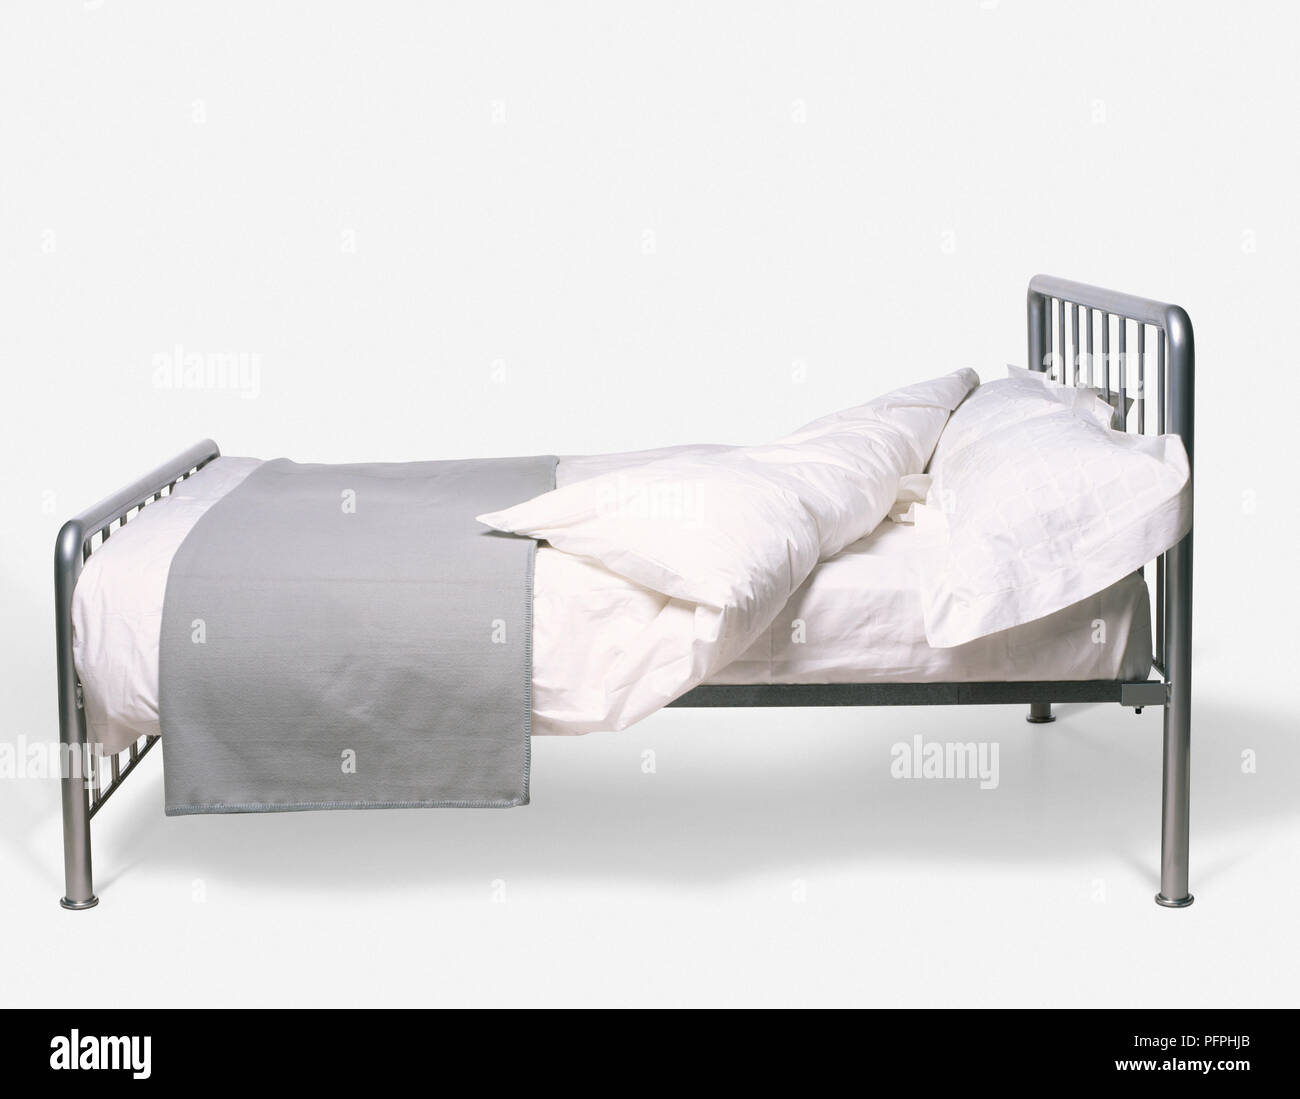 Bett mit Retro revival Metallrahmen, weiße Laken, Kissen, Bettdecke und gefaltet grau Bett Abdeckung Stockfoto